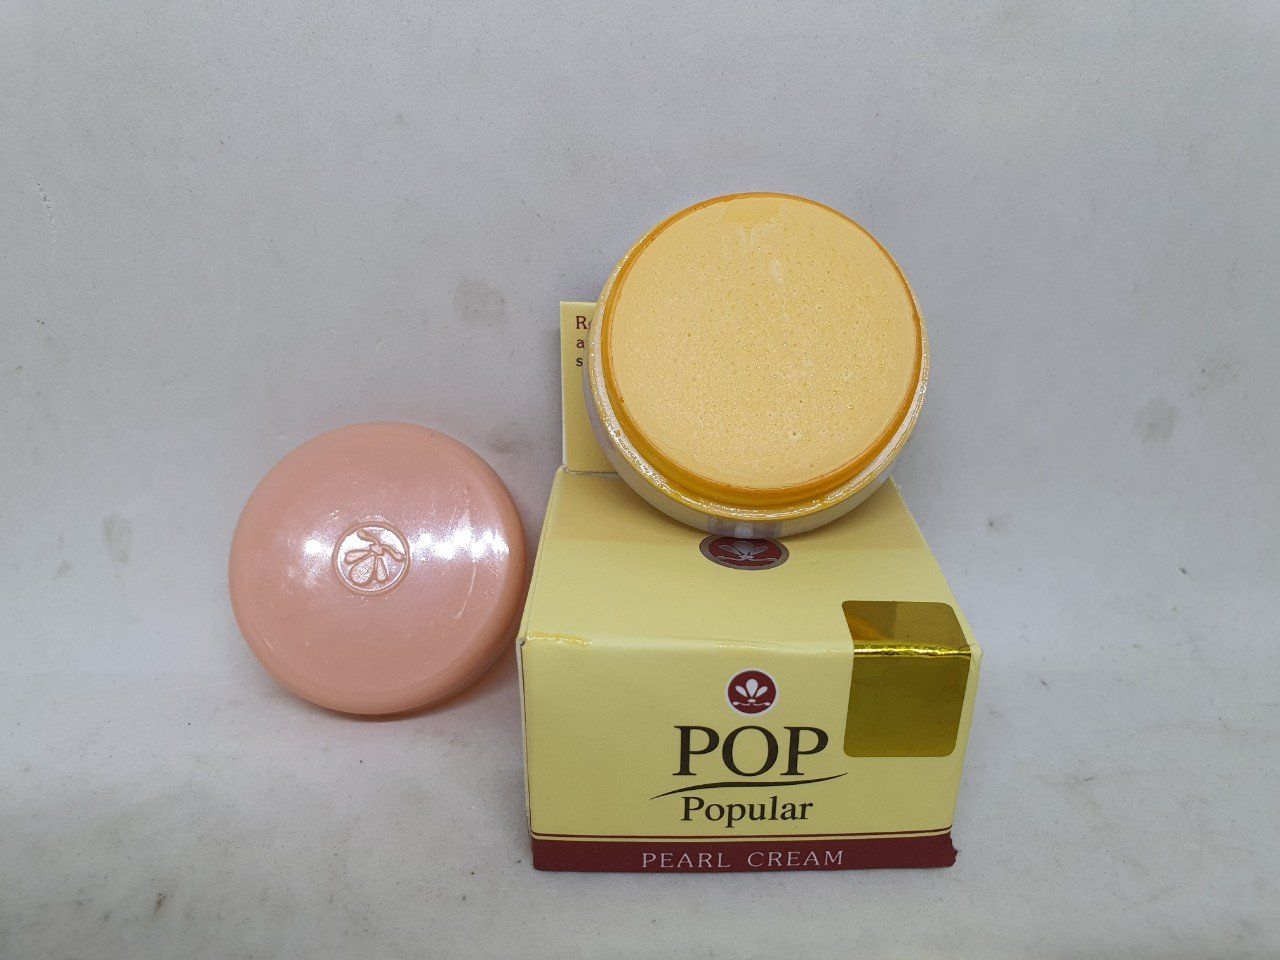  Kem mụȵ ņám tàn nhanǥ trắŉg da pop popular pearl cream hàng nội địa chính hãng thái lan 4g 